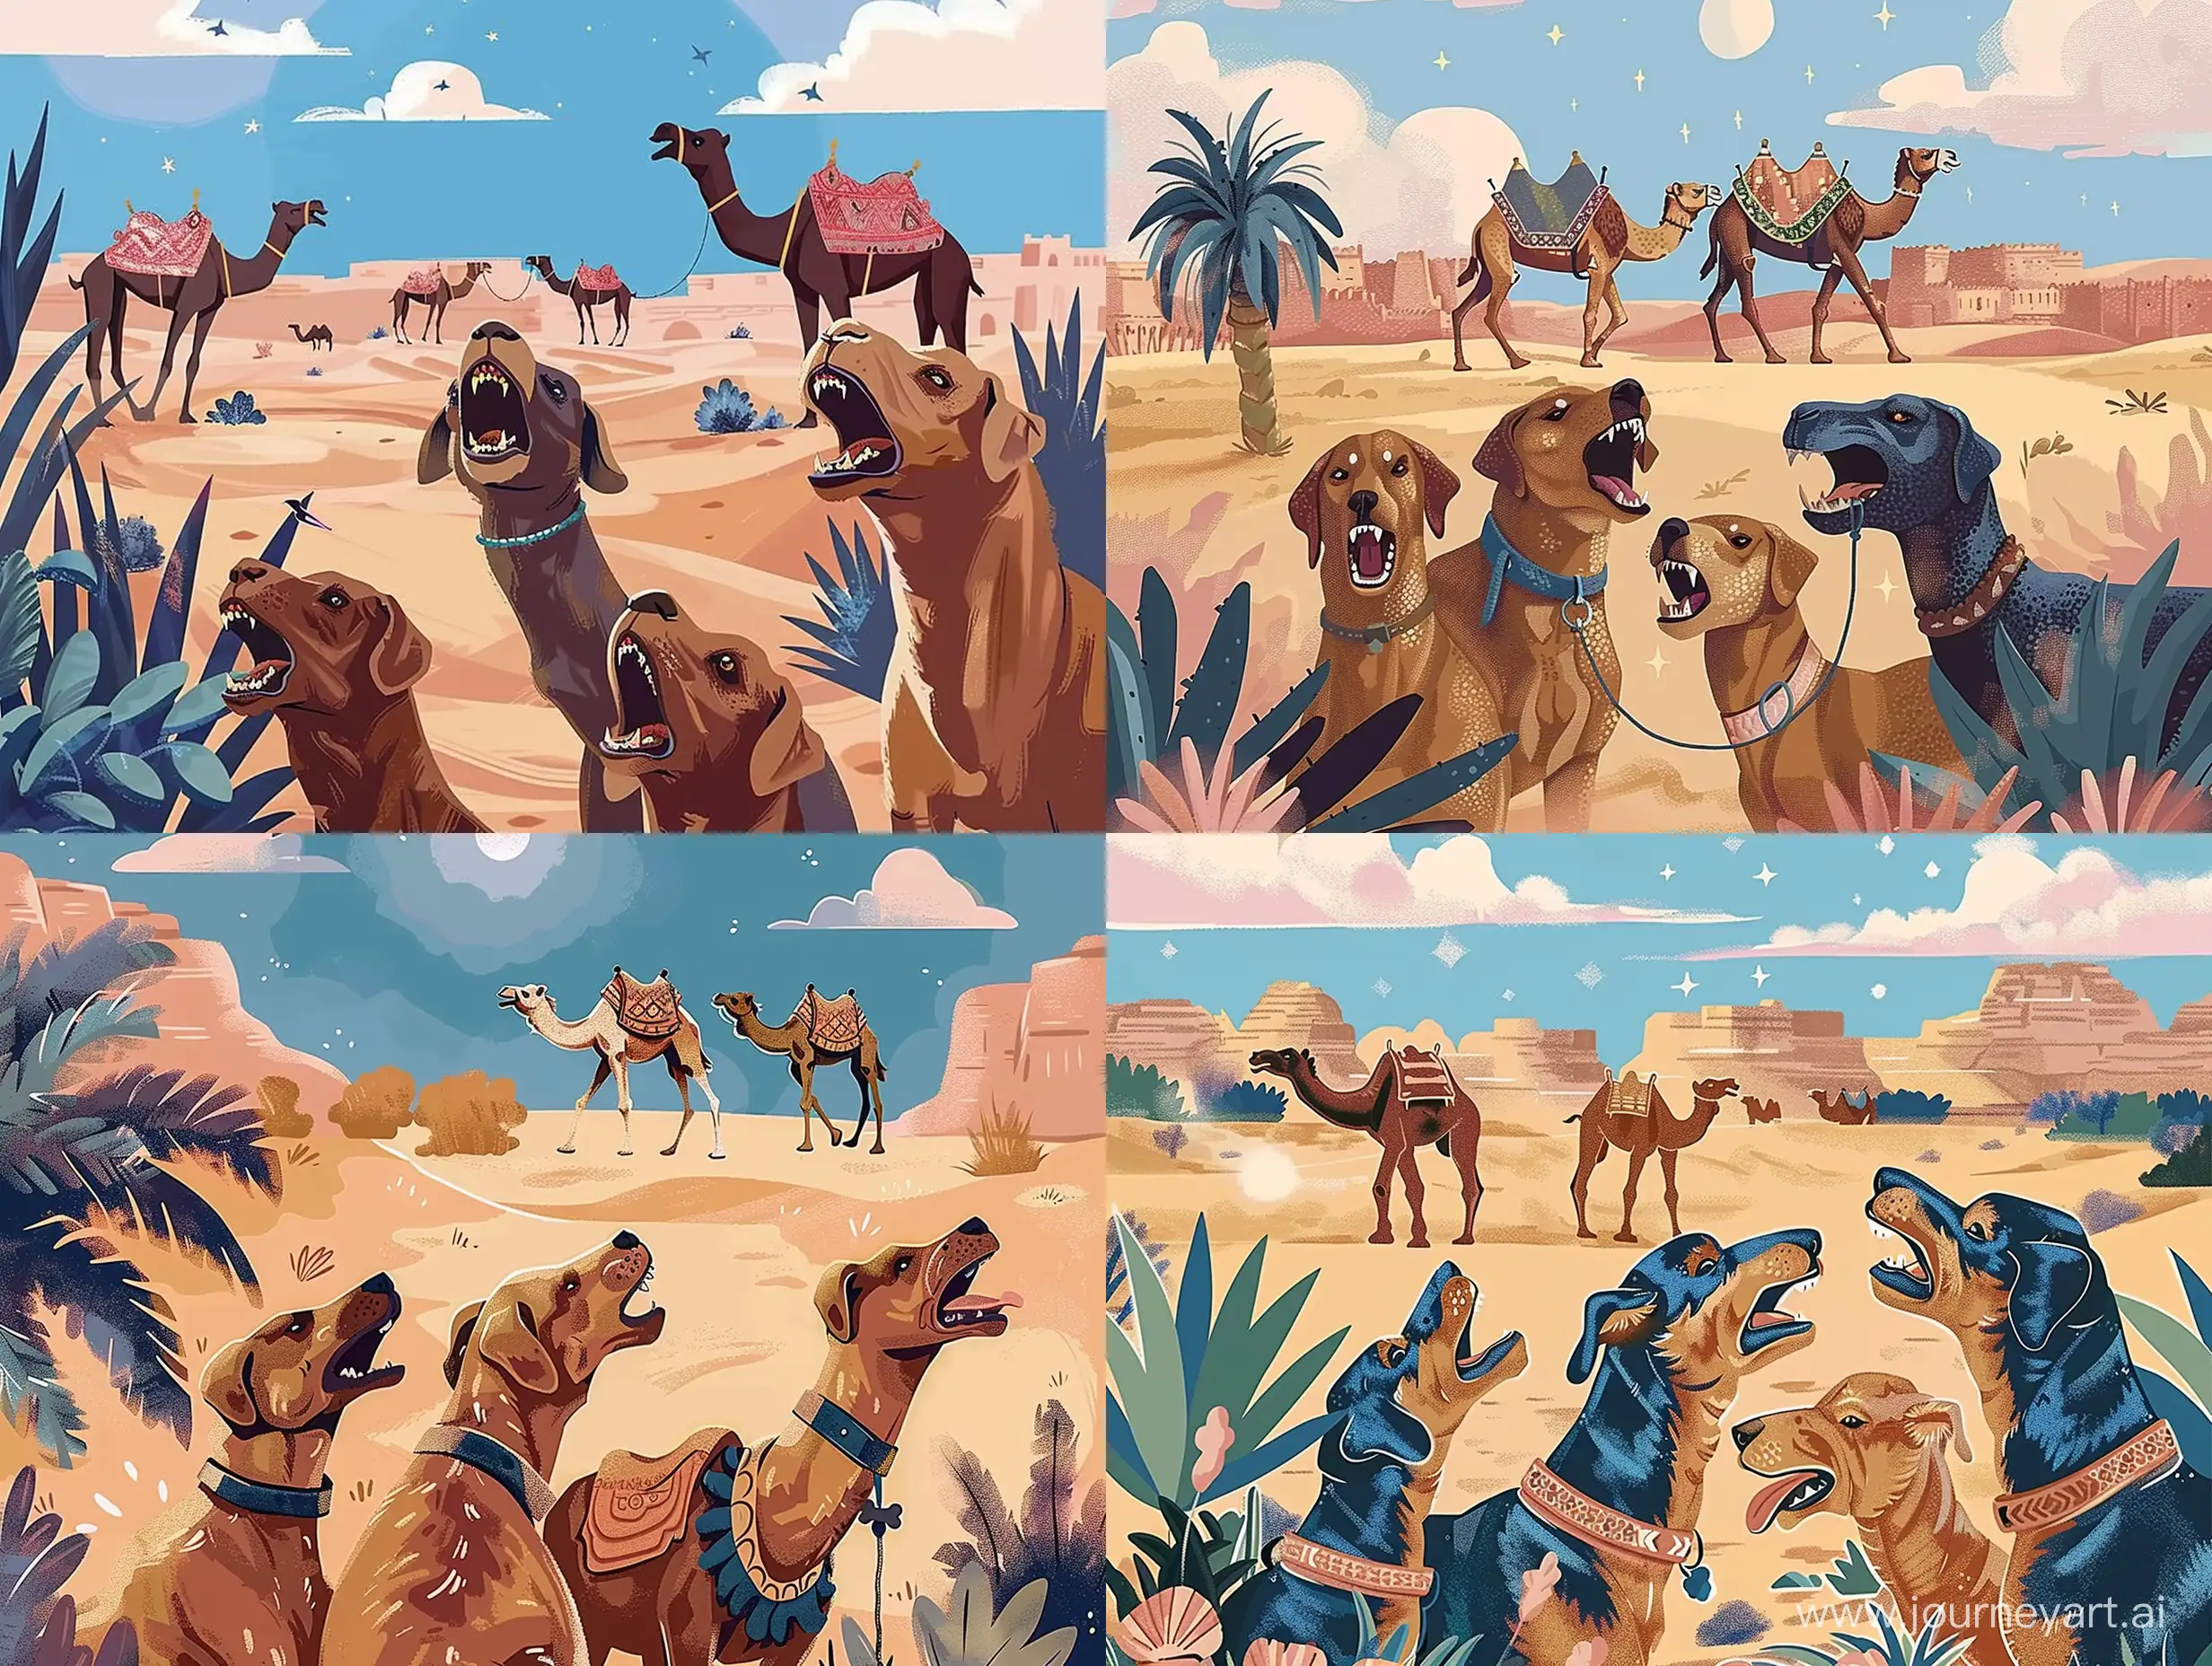 Иллюстрация на переднем плане лаят 3 собаки, на заднем плане верблюды идут спокойно по пустыни - sref https://i.pinimg.com/564x/2b/ea/95/2bea95b63f353512dfe75b8bb6cf15fd.jpg